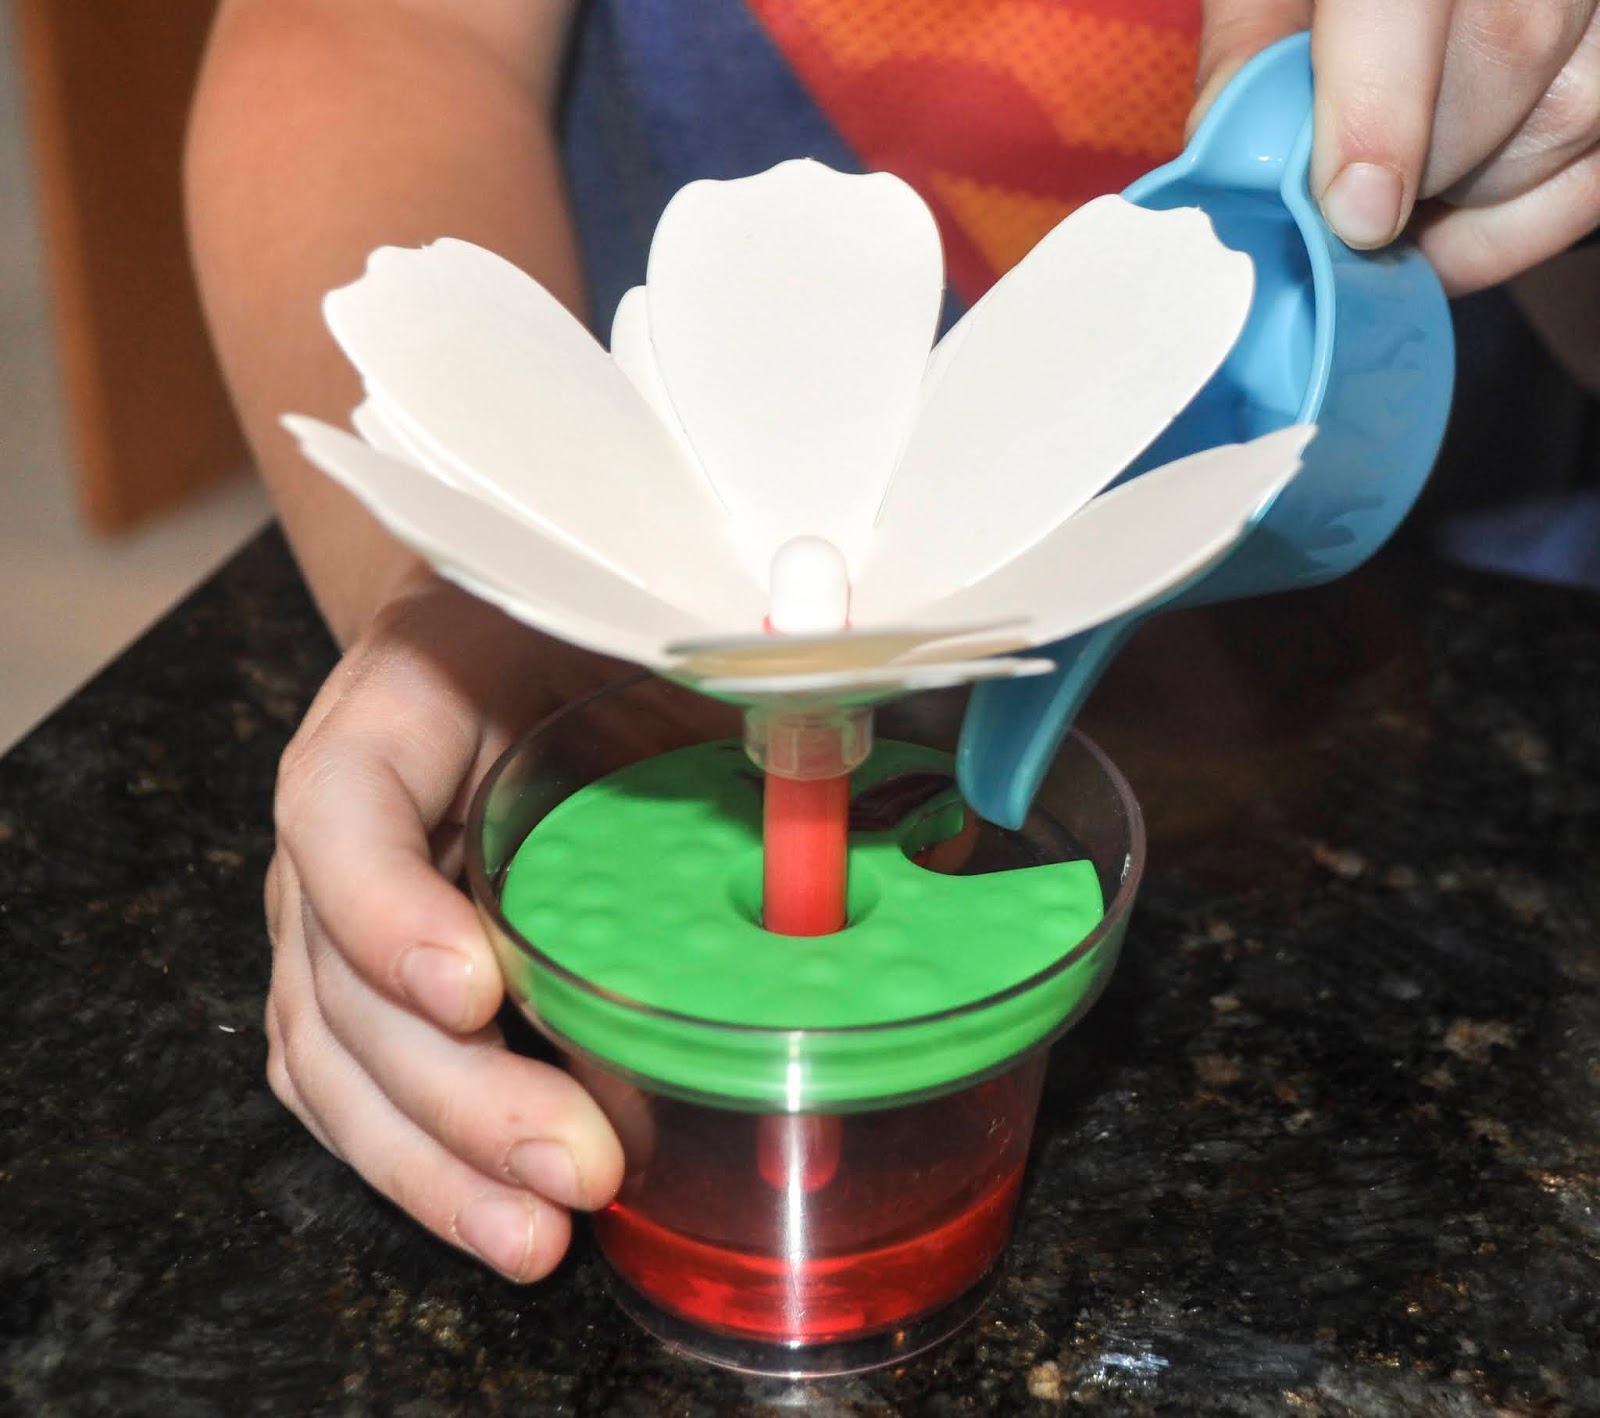 The Prettiest STEAM Activity: Crayola Paper Flower Kit